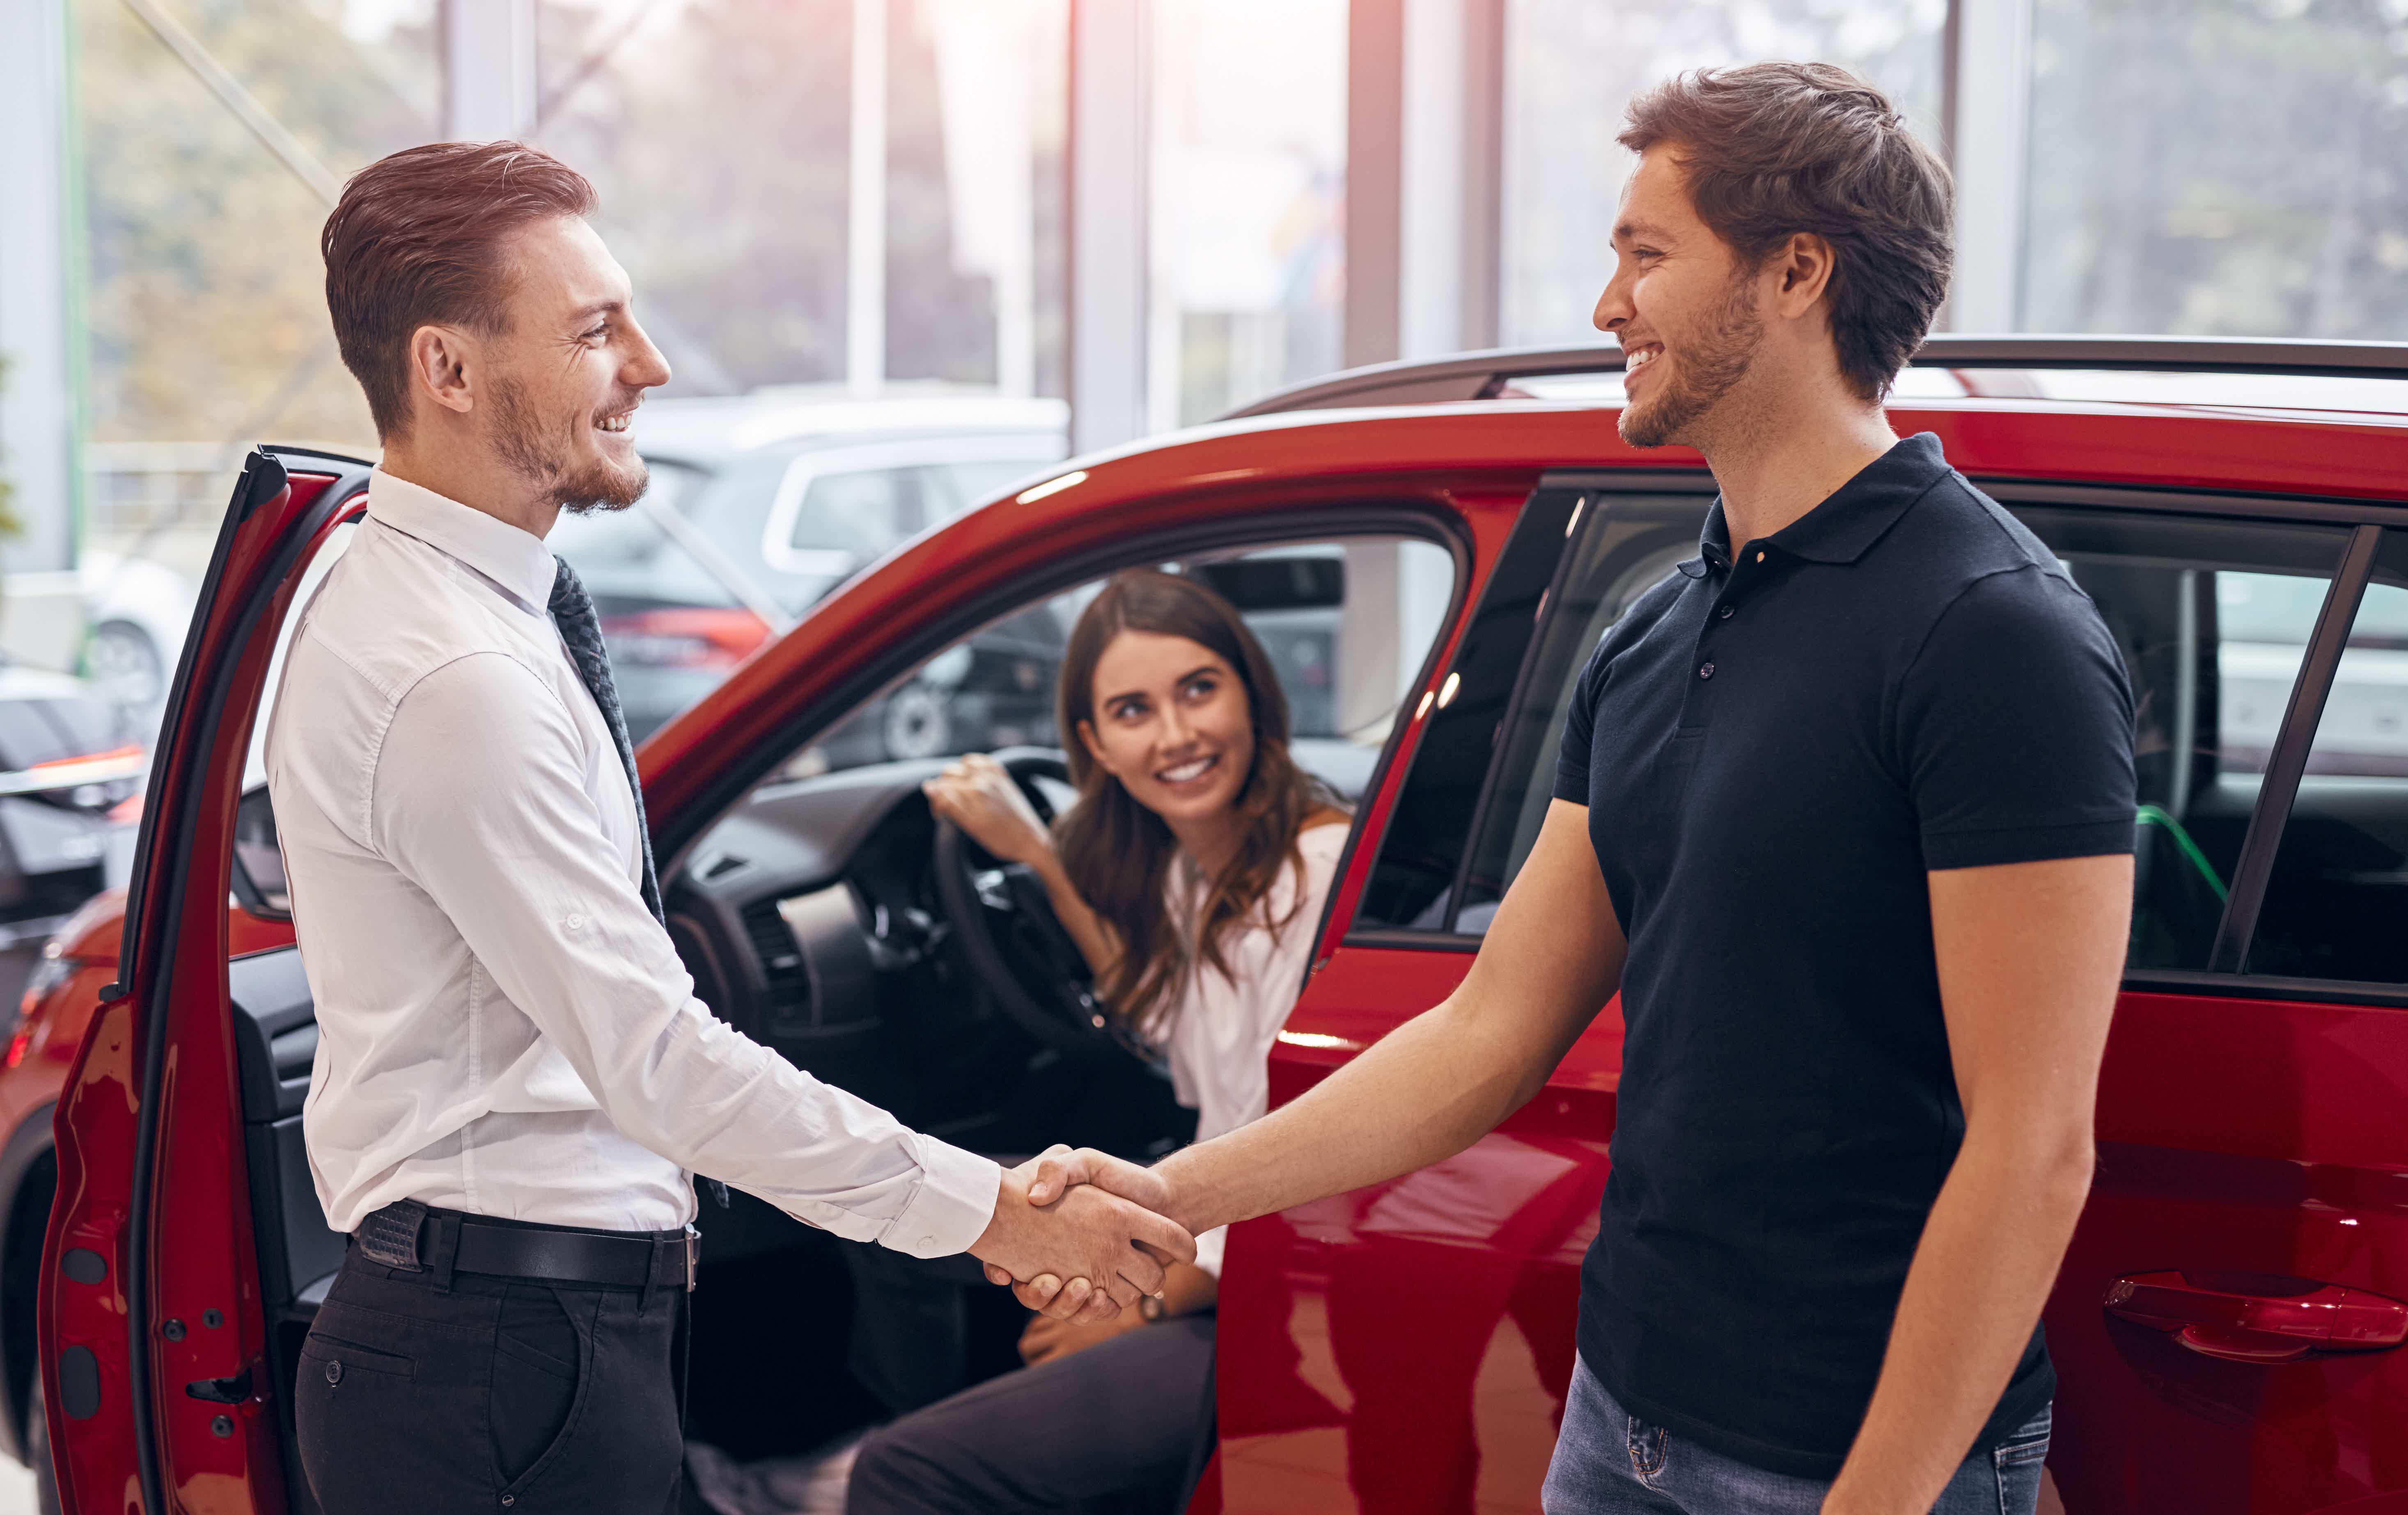 O Itaú oferece o consórcio para algumas marcas de carro. Confira! Fonte: Adobe Stock